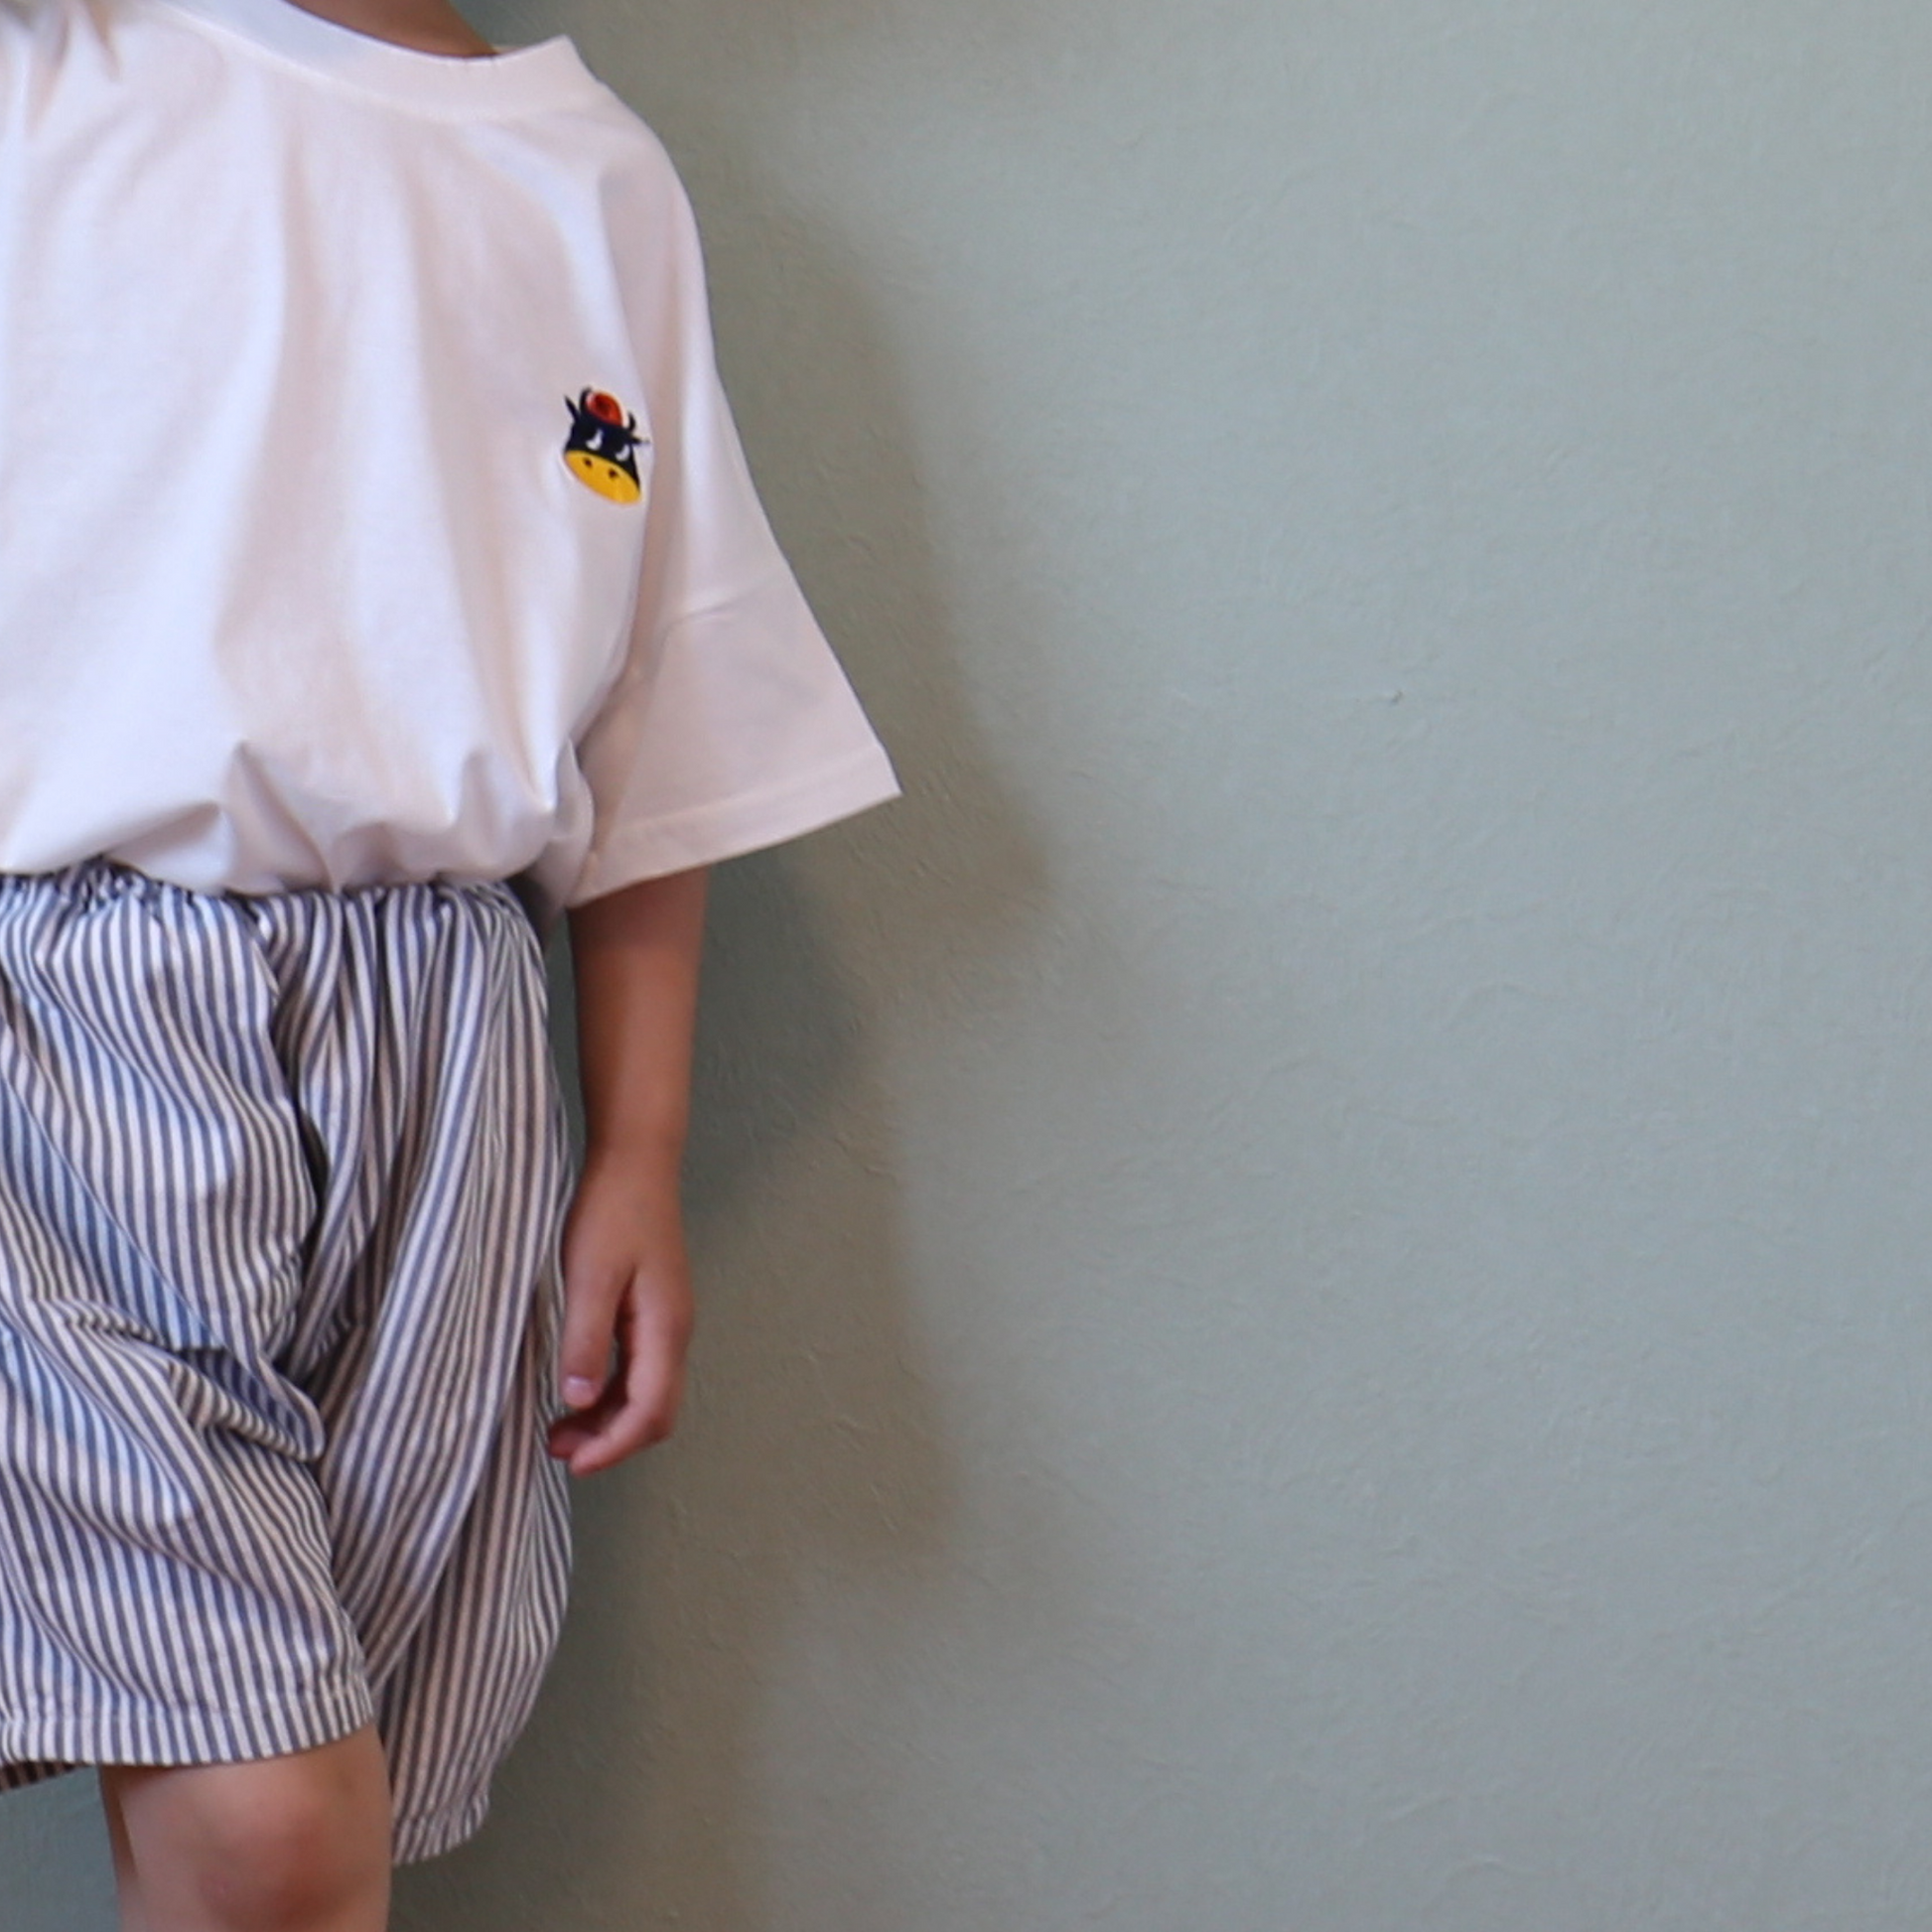 ワンポイント cowステッチ Tシャツ / one point cow stitch Tee (こども服) - kids clothes shop GUZUGUZU